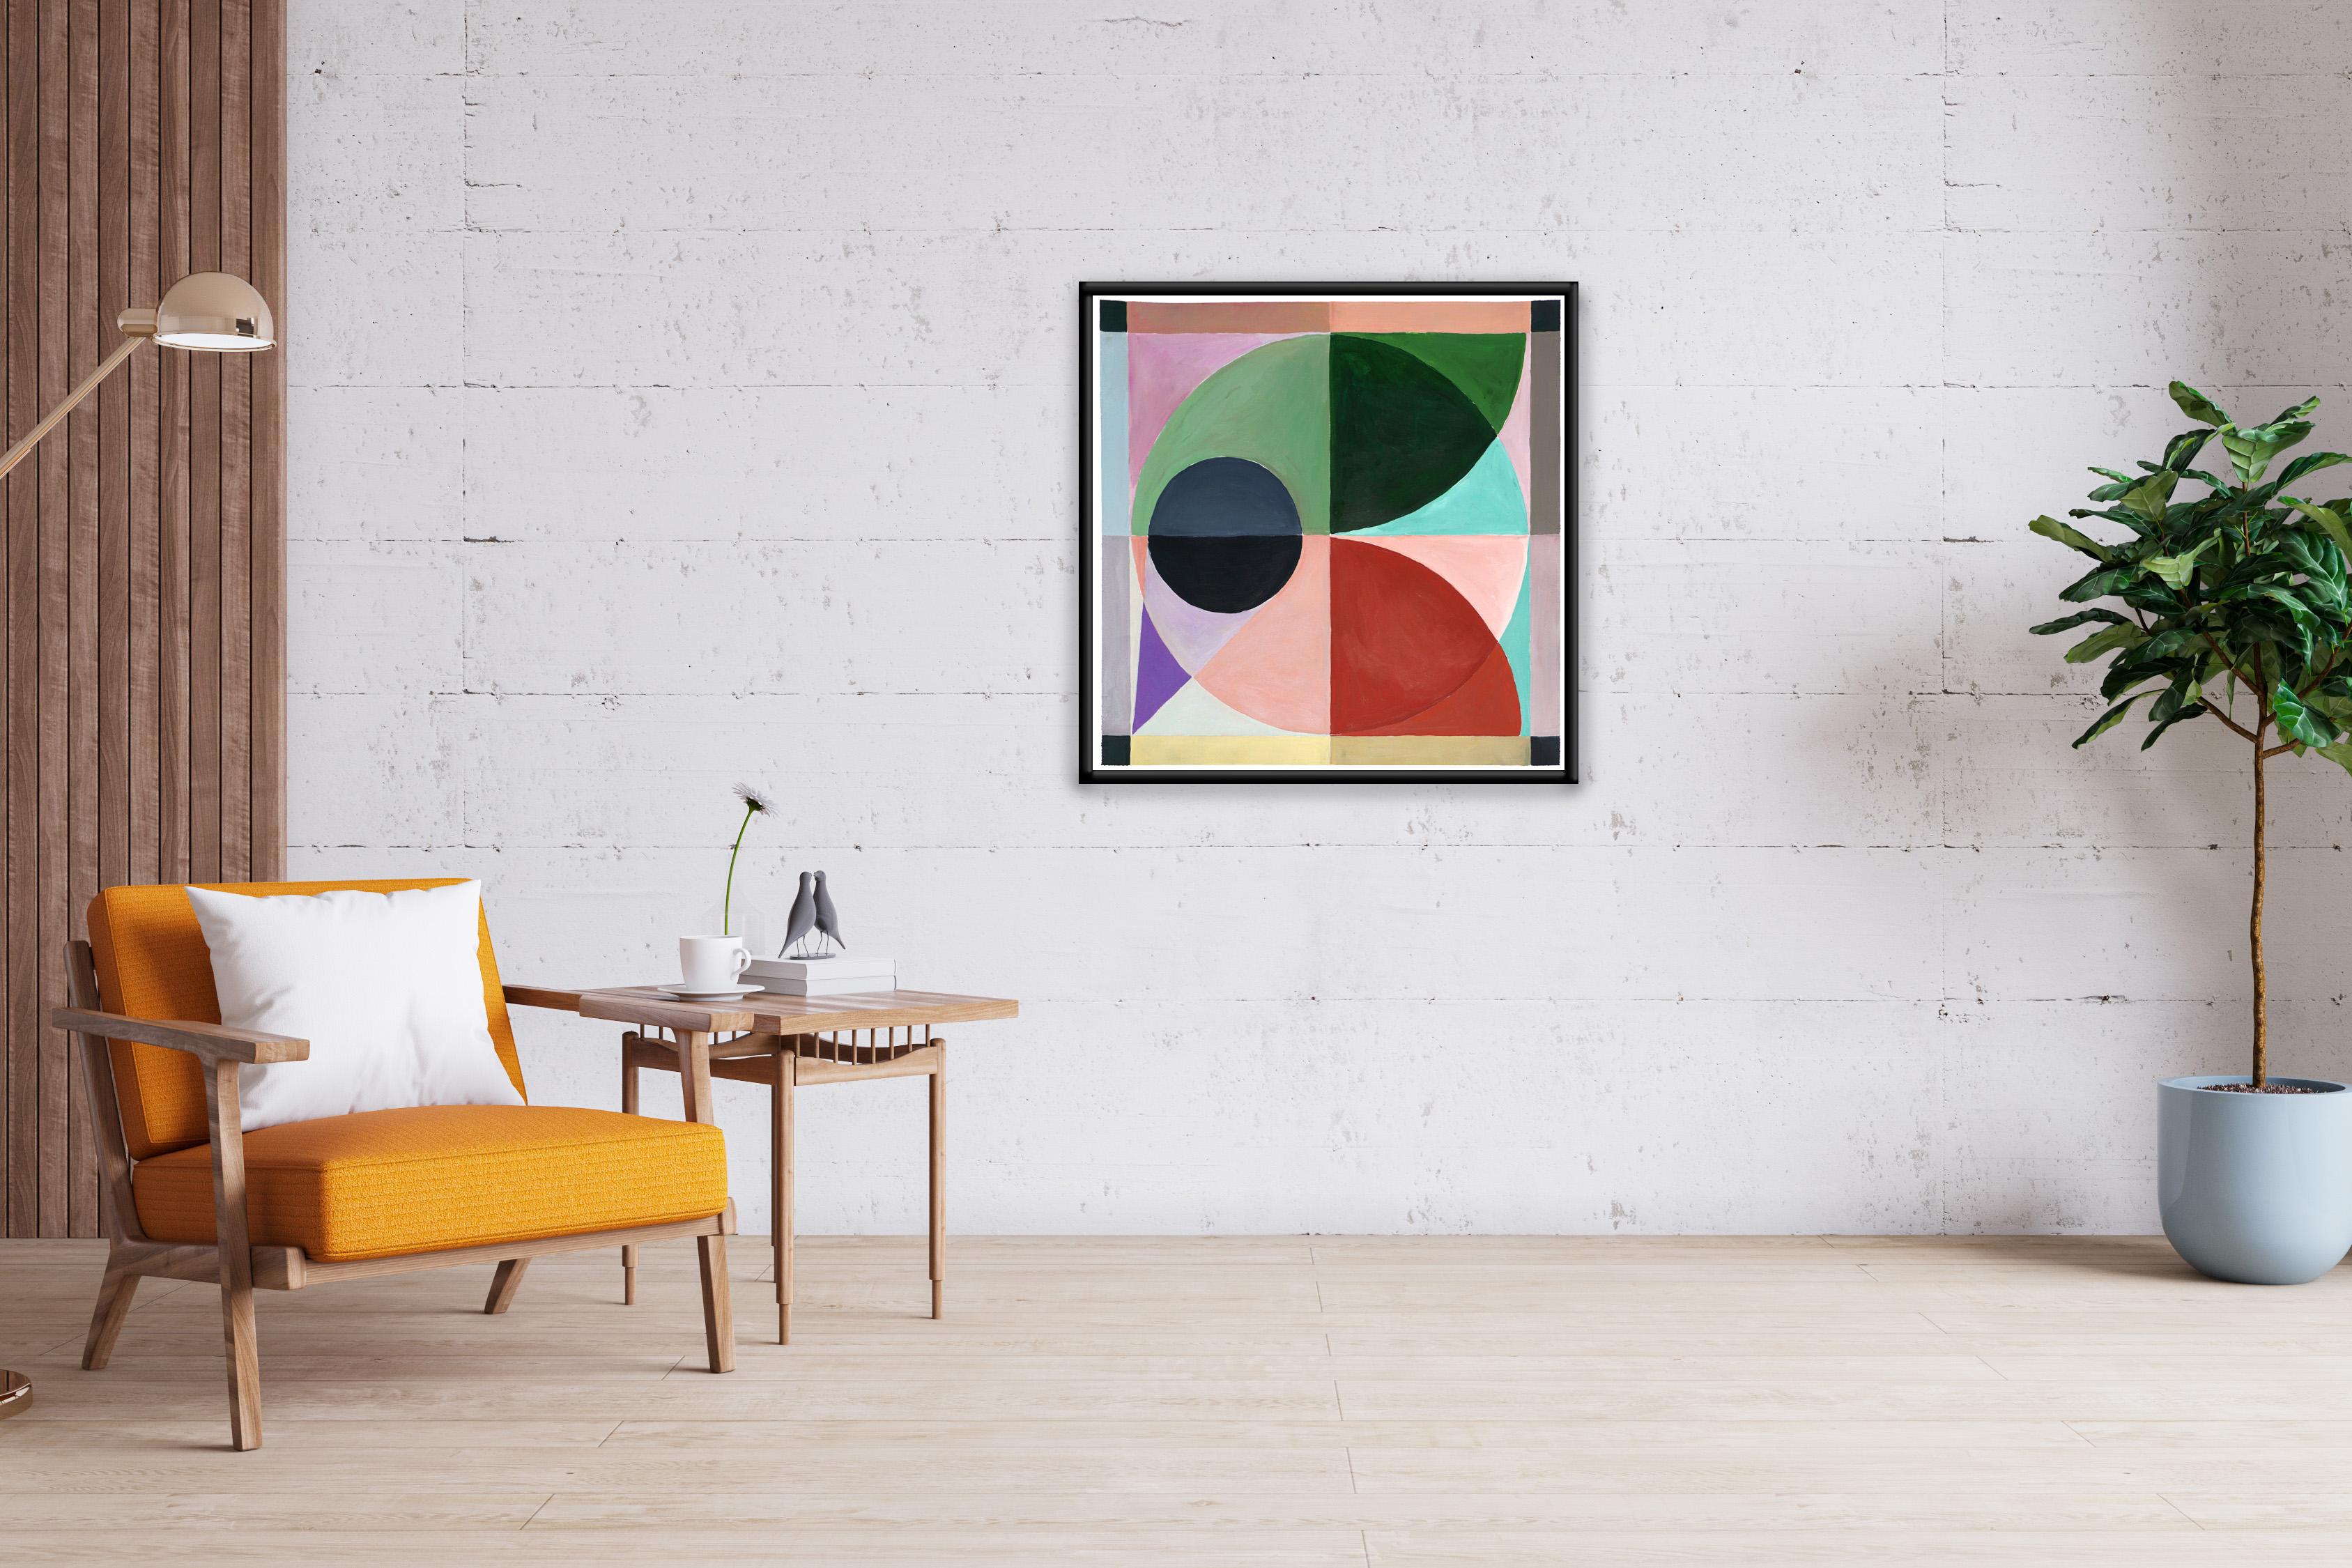 Ces séries de peintures de Natalia Roman s'inspirent des formes géométriques et minimalistes et des peintures du début du modernisme, avec un enthousiasme particulier pour les dessins d'astronomie et de mathématiques. Les combinaisons de couleurs